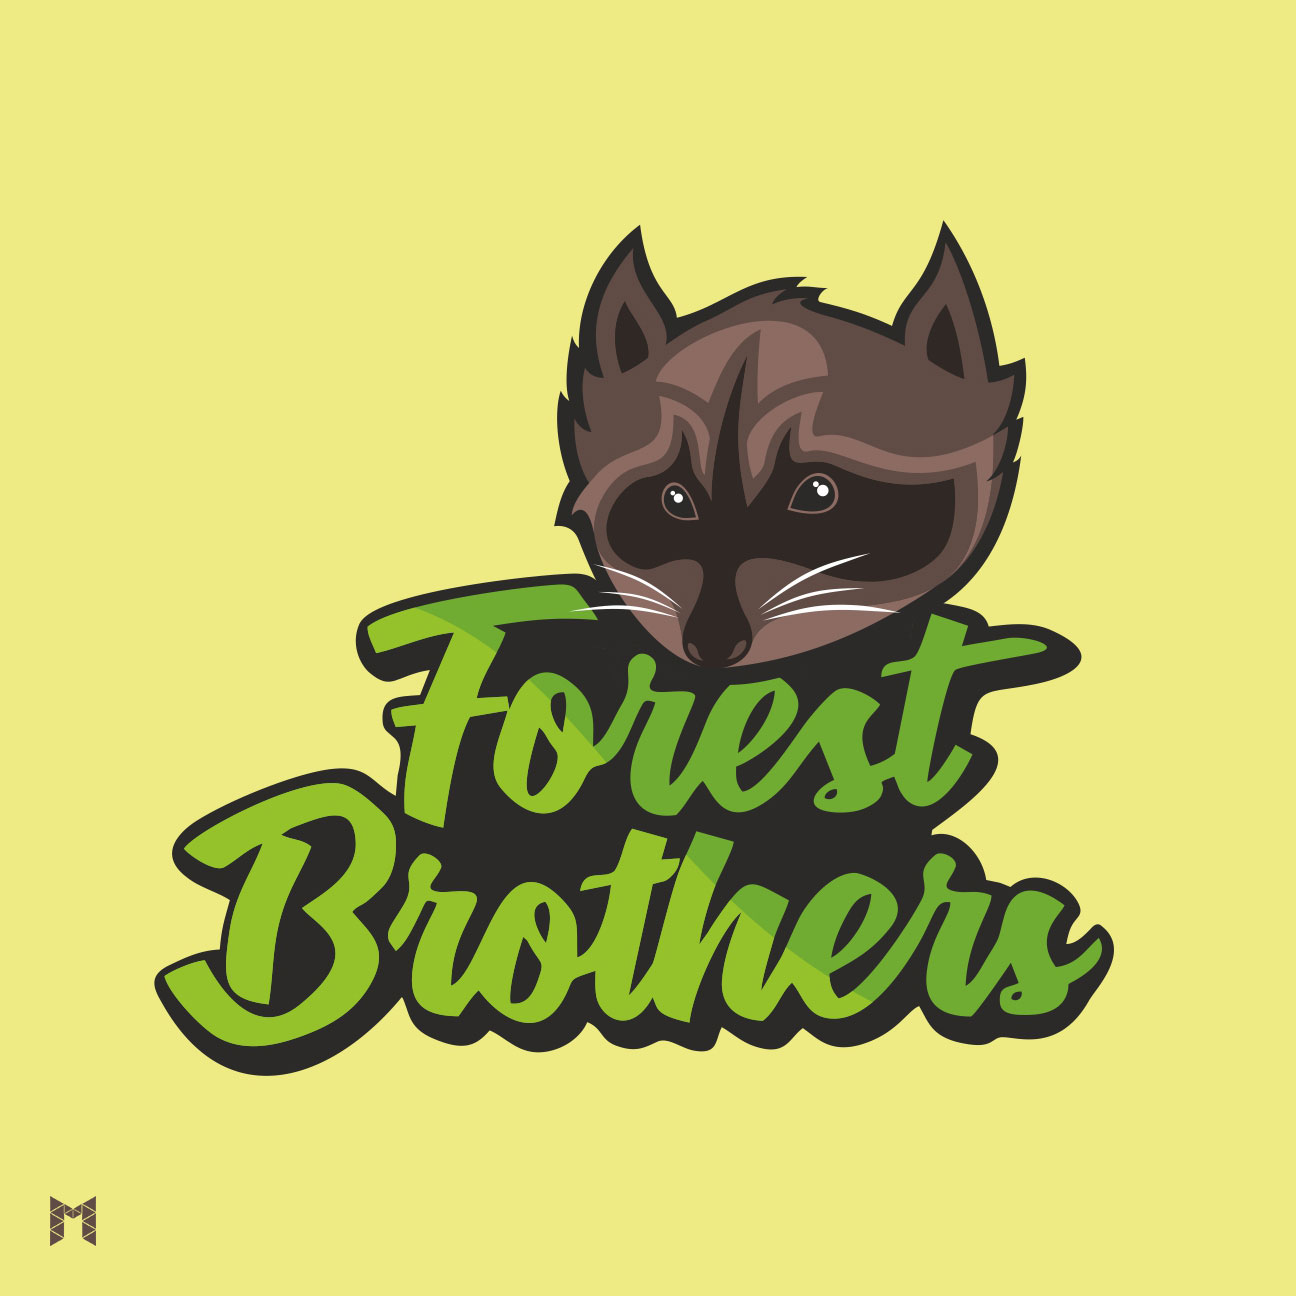 Forest brothers %d0%a6%d0%b2%d0%b5%d1%82 %d0%98%d0%bd%d1%81%d1%82